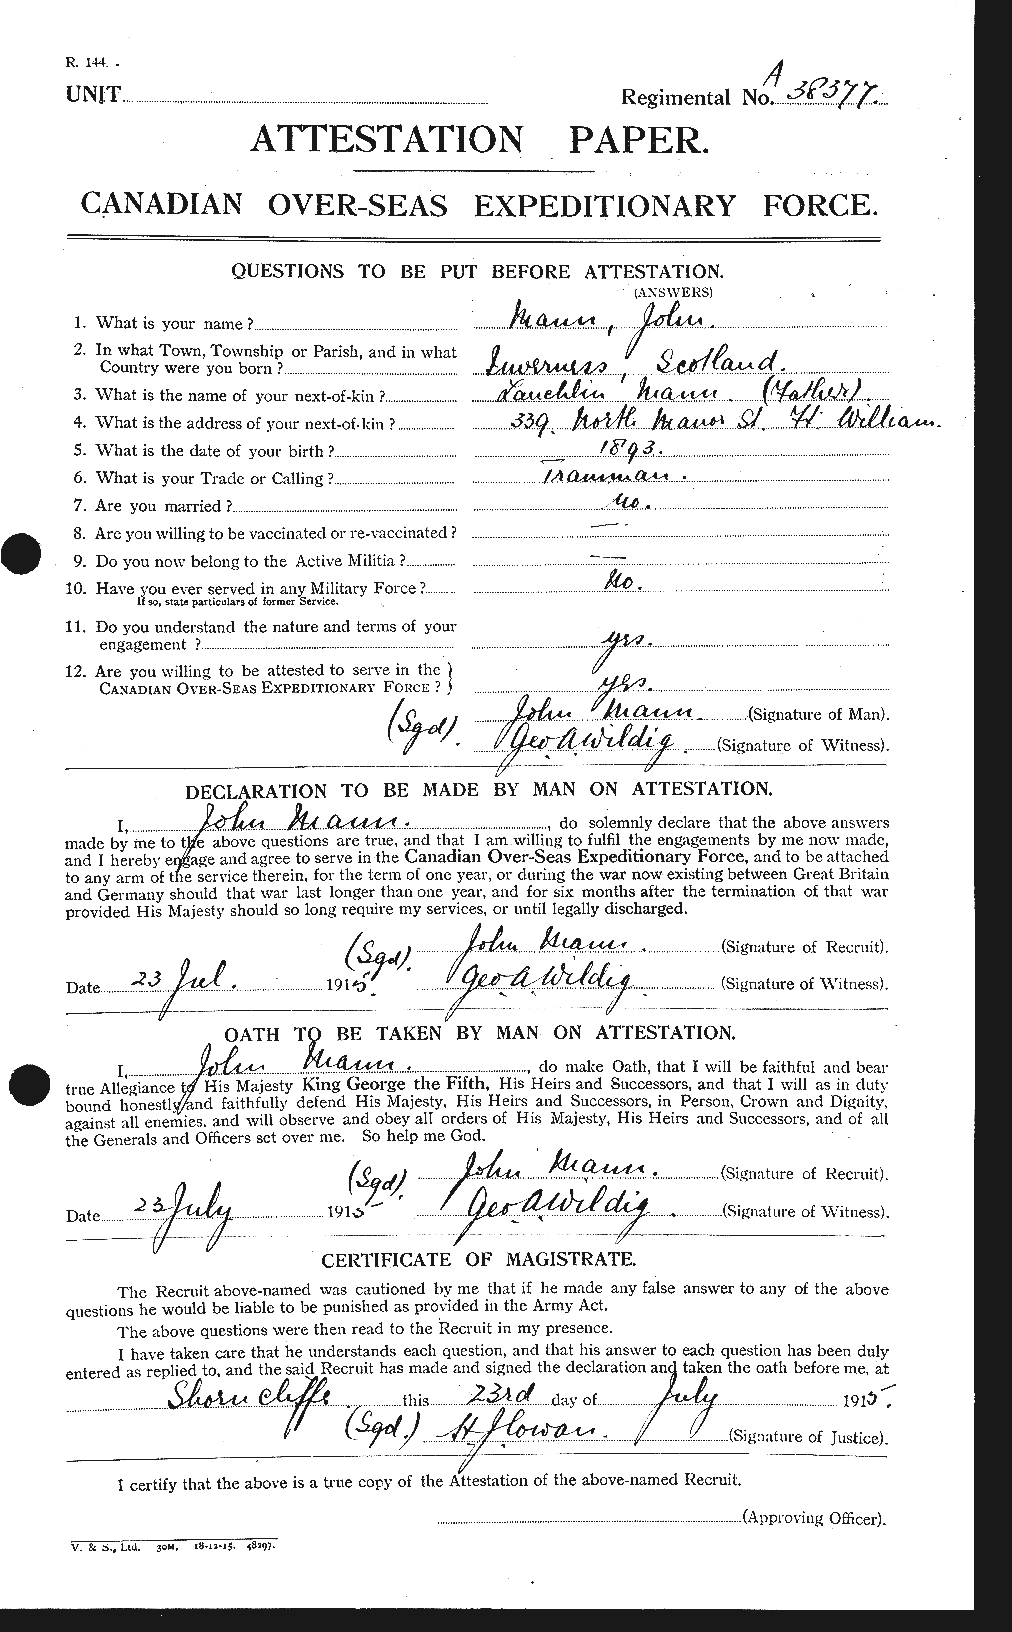 Dossiers du Personnel de la Première Guerre mondiale - CEC 477226a